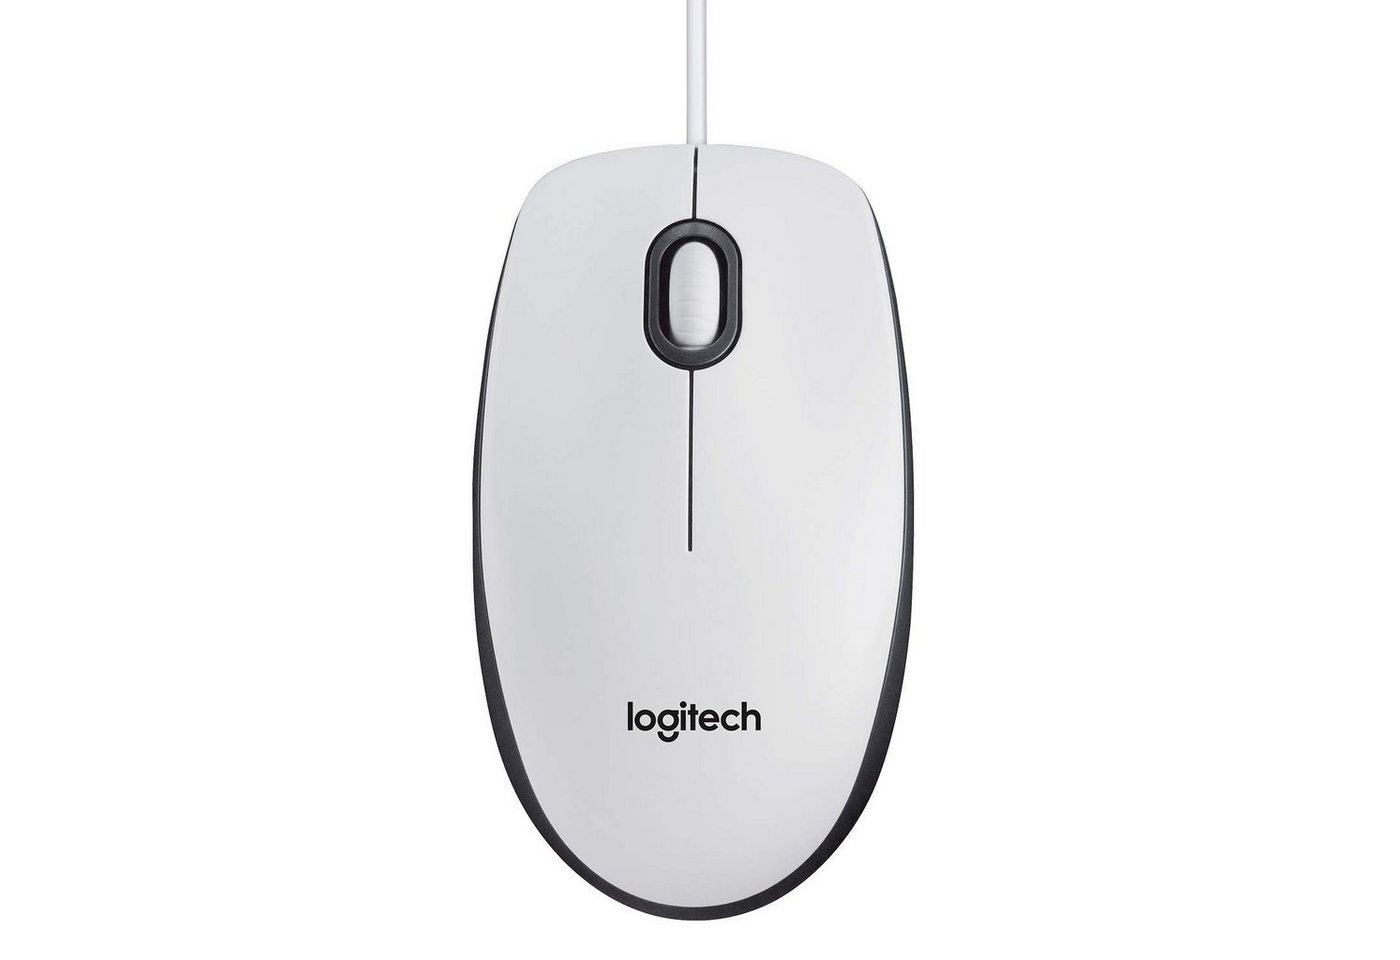 Logitech M100 Maus mit Kabel 1000DPI USB-Anschluss 3 beidhändig PC/Mac Weiß Maus von Logitech